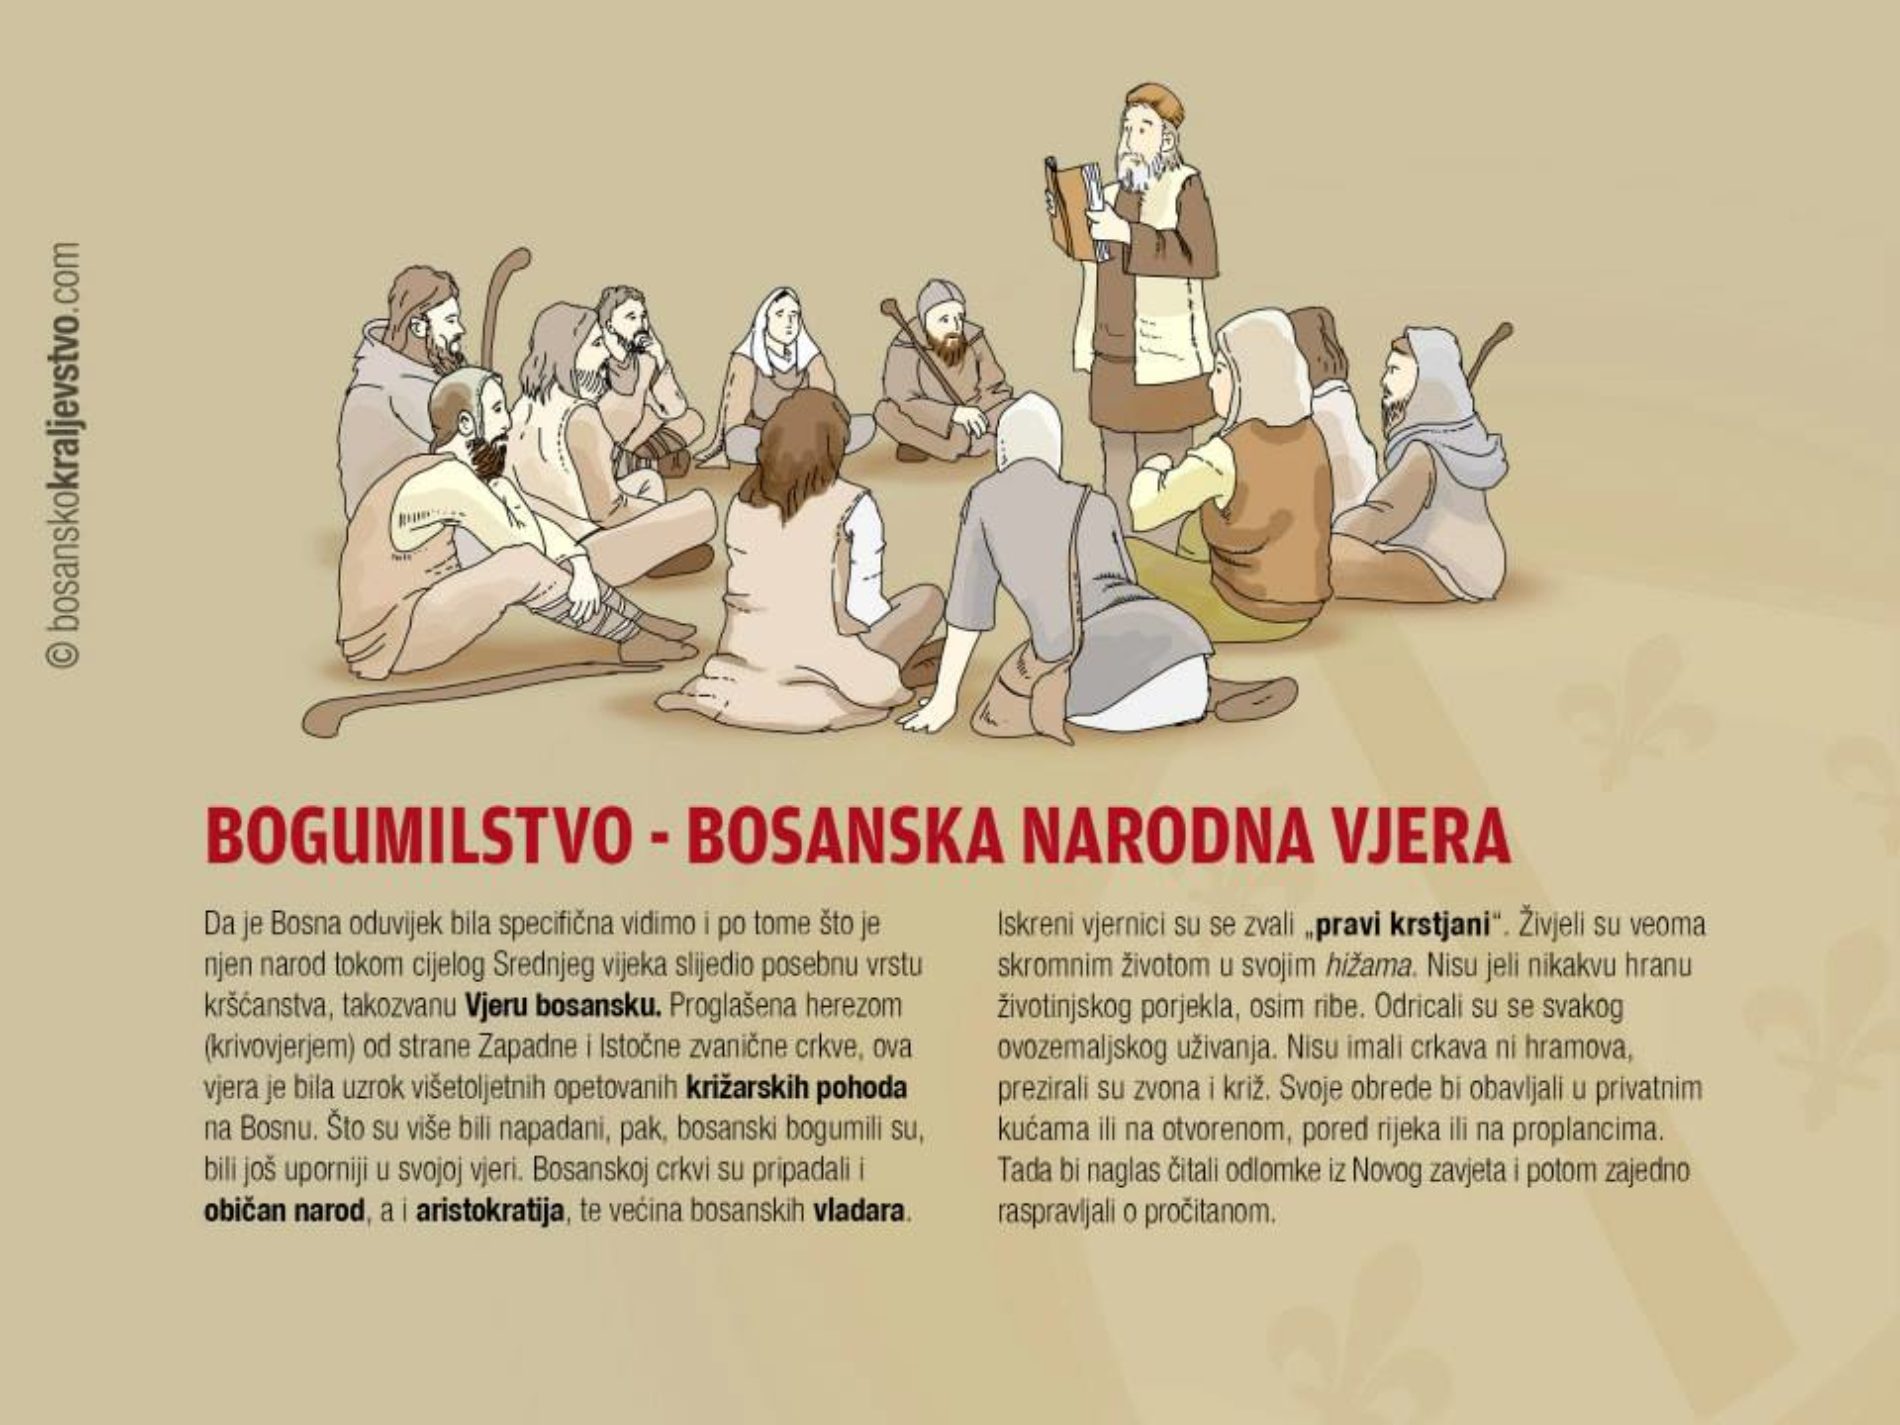 Saradnja bosanskih vladara i (heretičke) Crkve bosanske u 13. i 14. vijeku